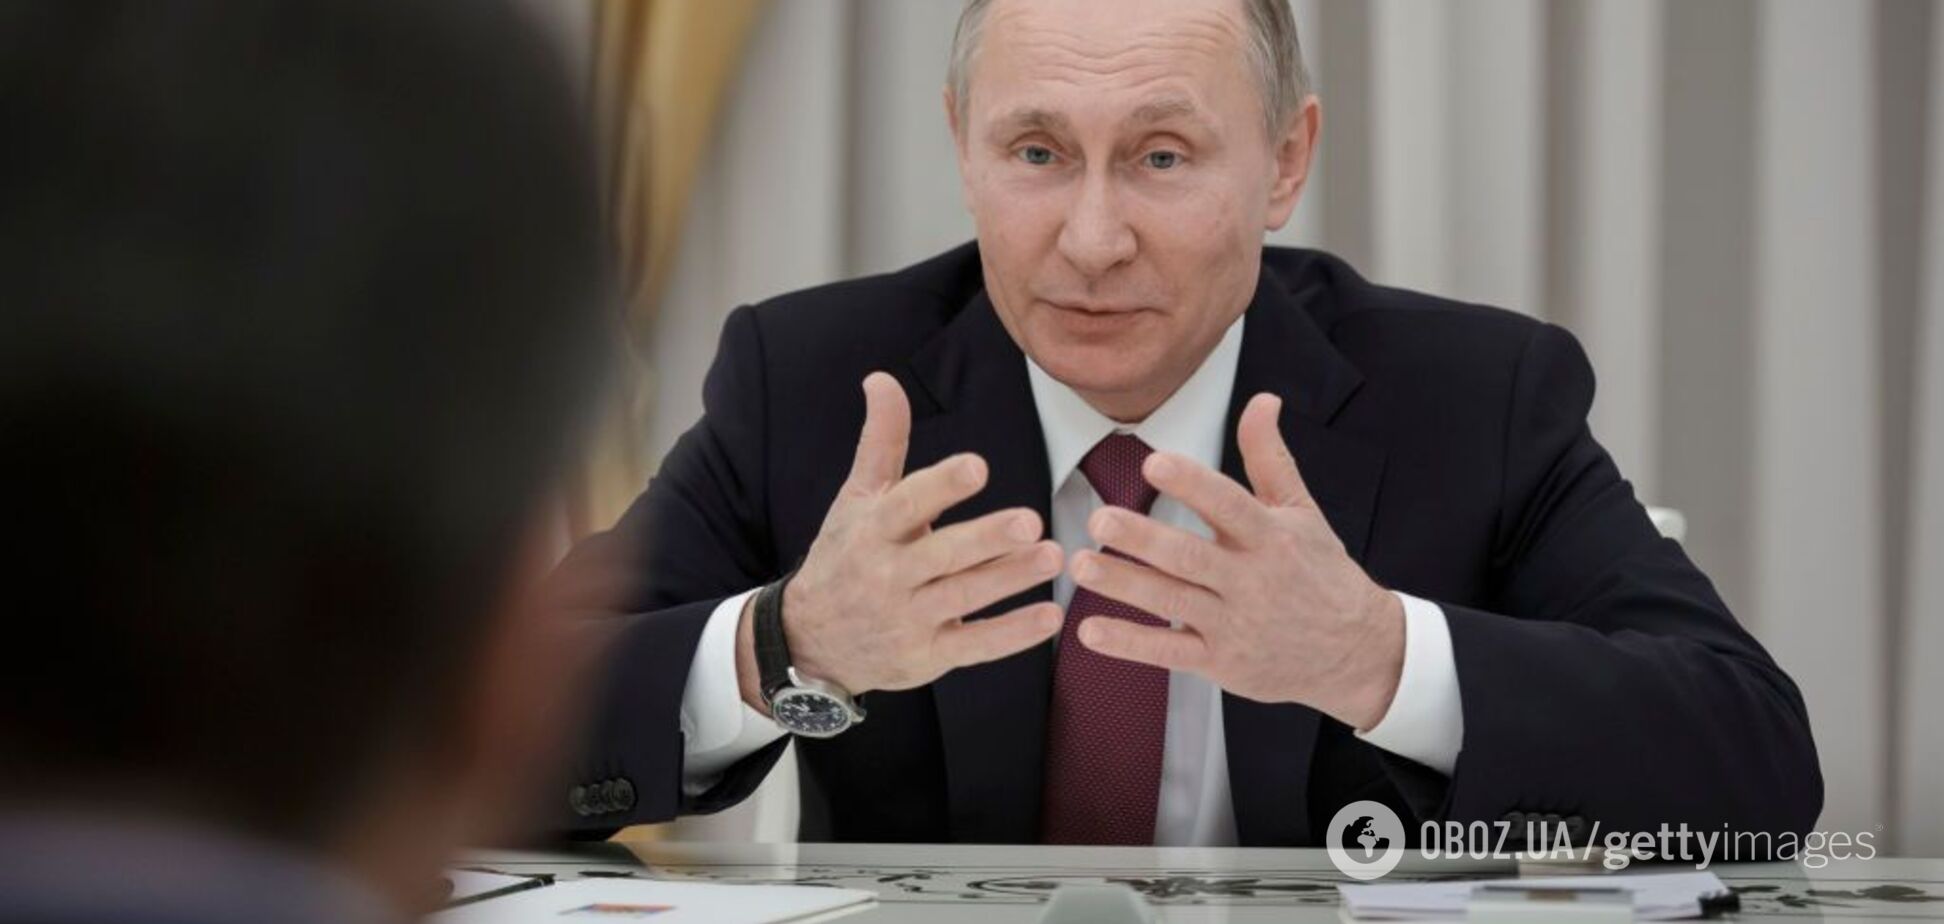 Прочнее Крымского моста: Портников раскрыл подлый поступок Путина с народом